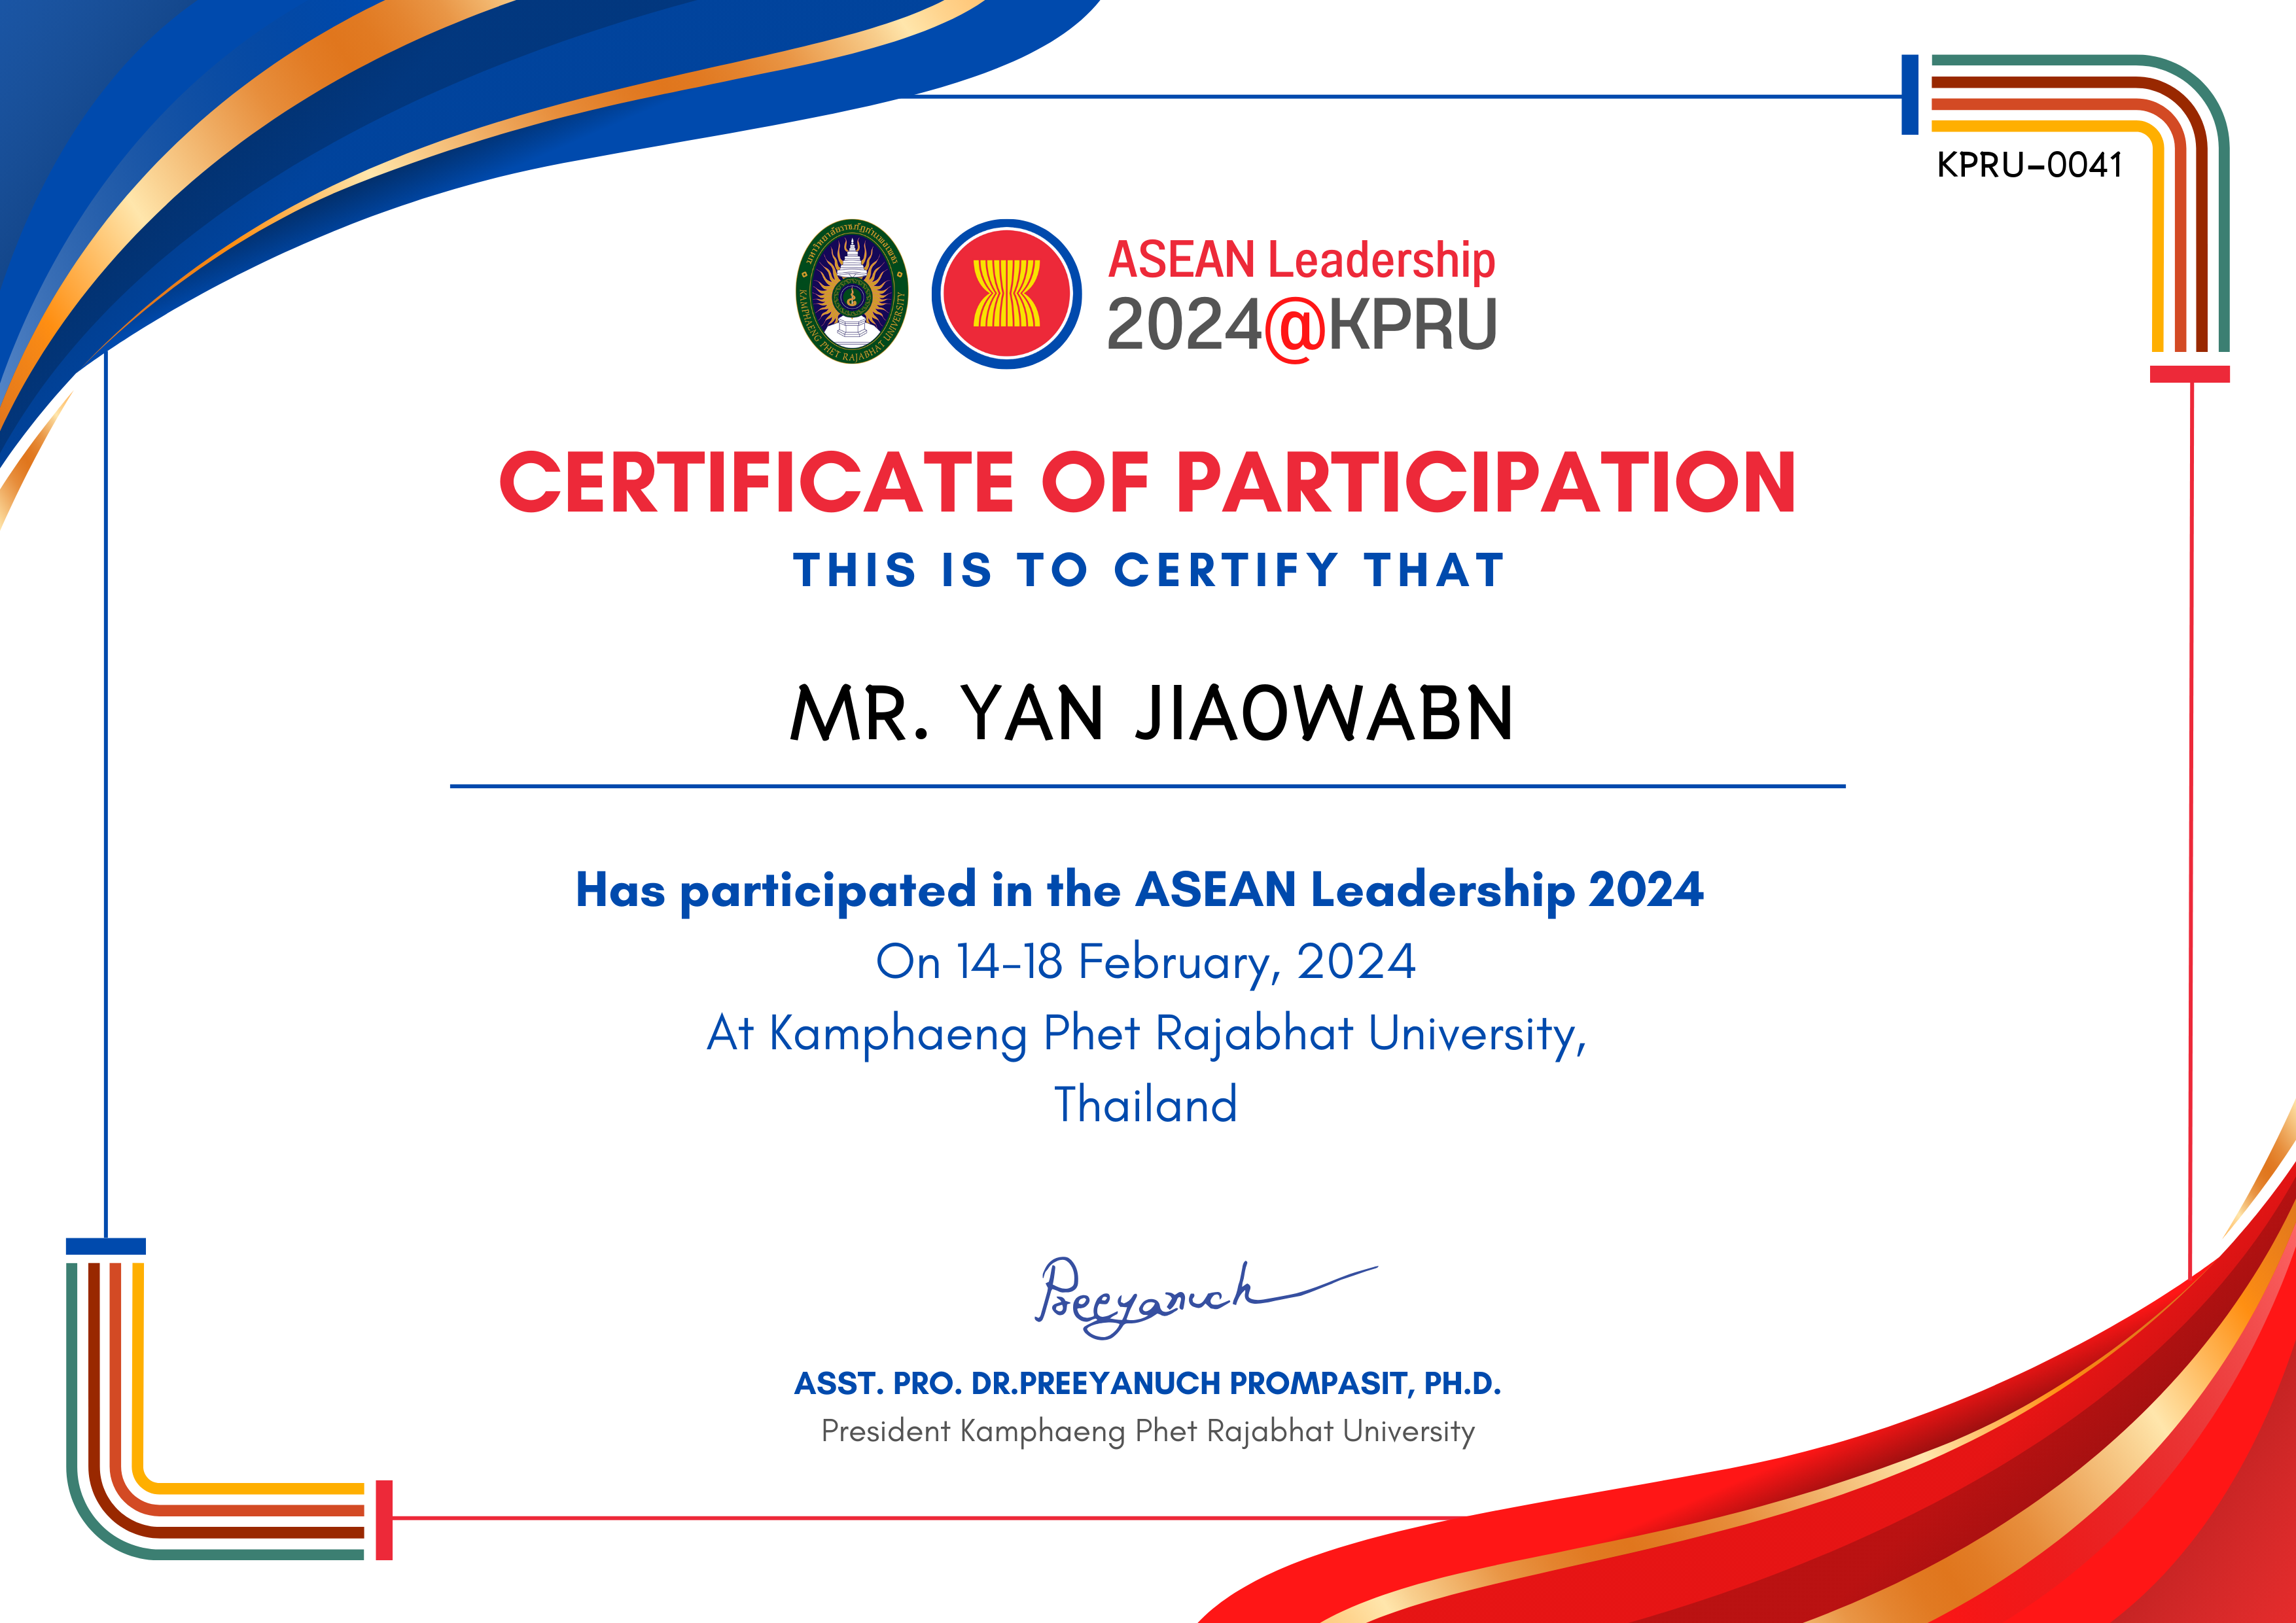 เกียรติบัตร ASEAN Leadership 2024-participated ของ MR. YAN JIAOWABN